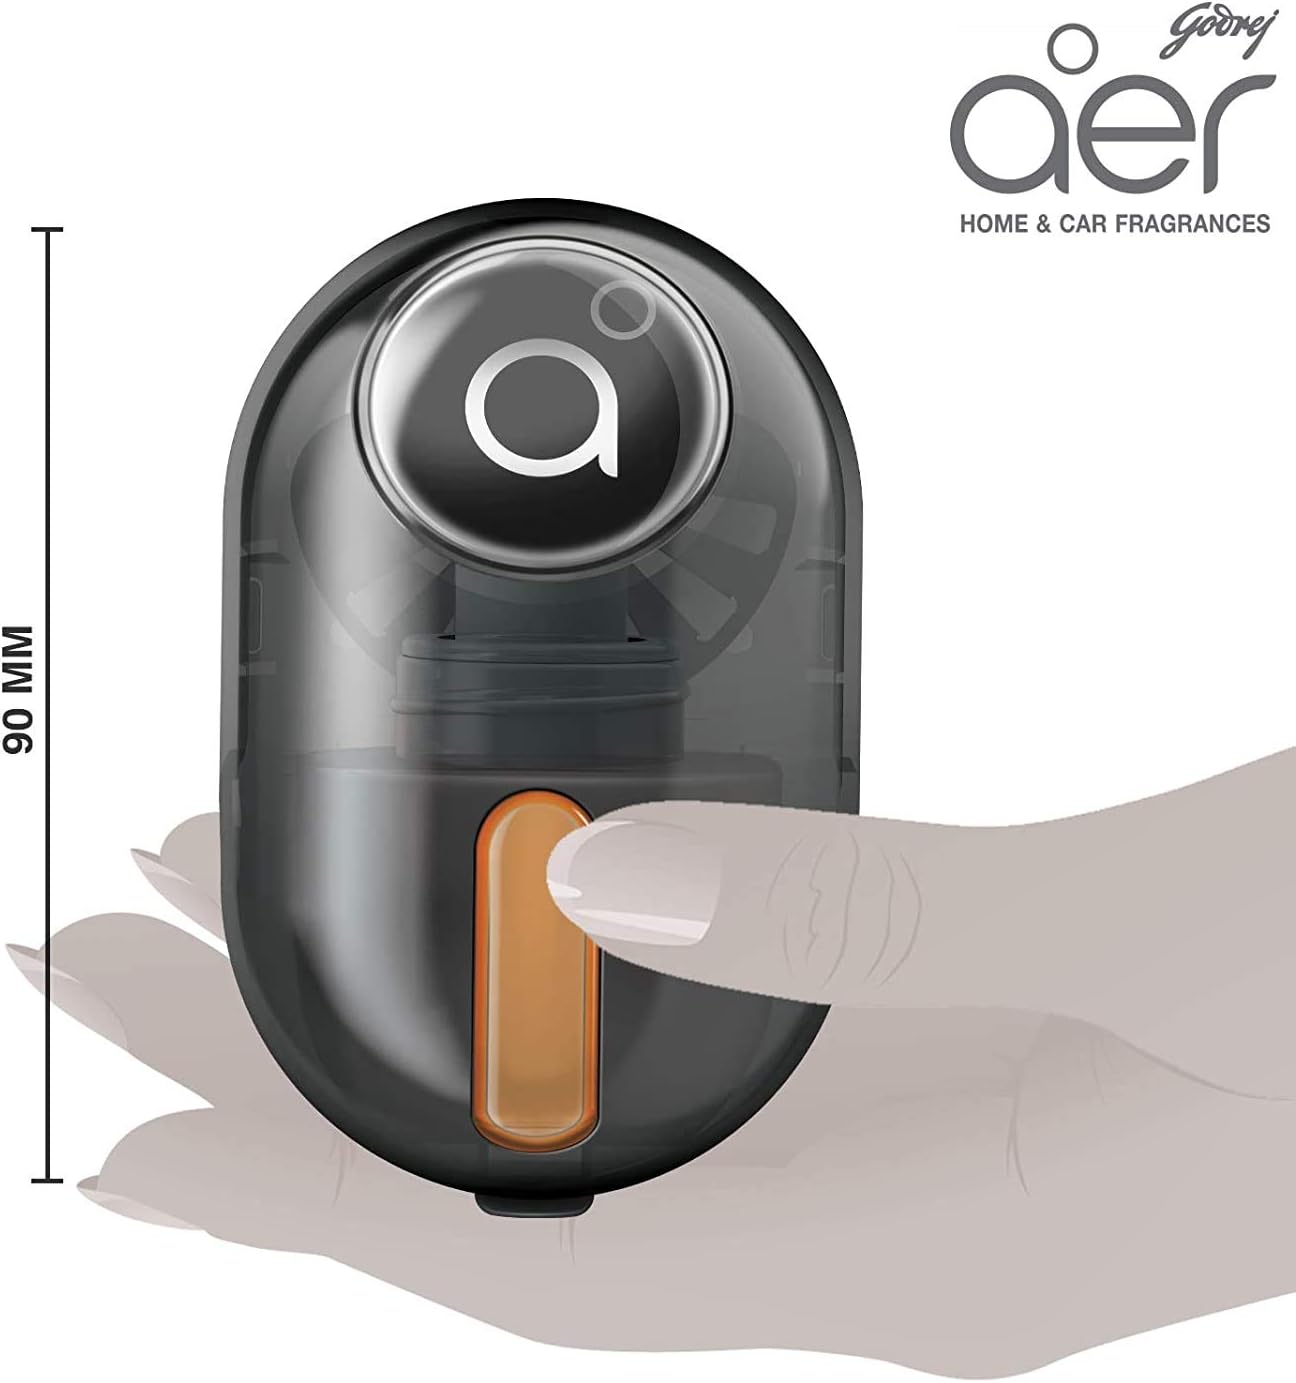 Godrej aer Click, Car Vent Air Freshener Kit - Musk After Smoke (10G), Black